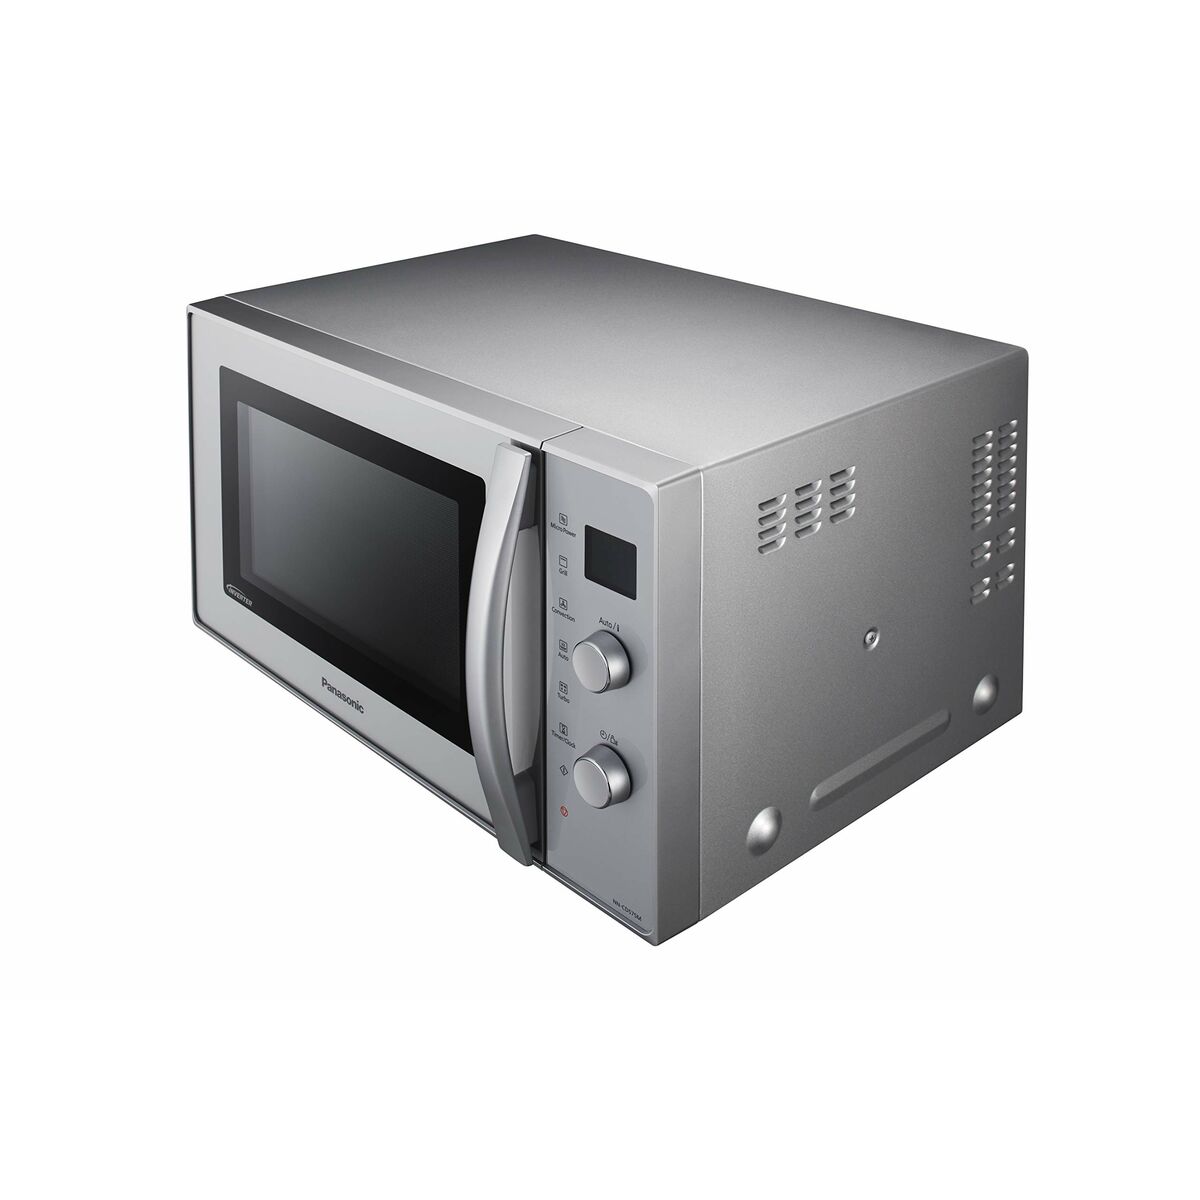 Mikrowelle mit Grill Panasonic NN-CD575MEPG 27 L Silber 27 L